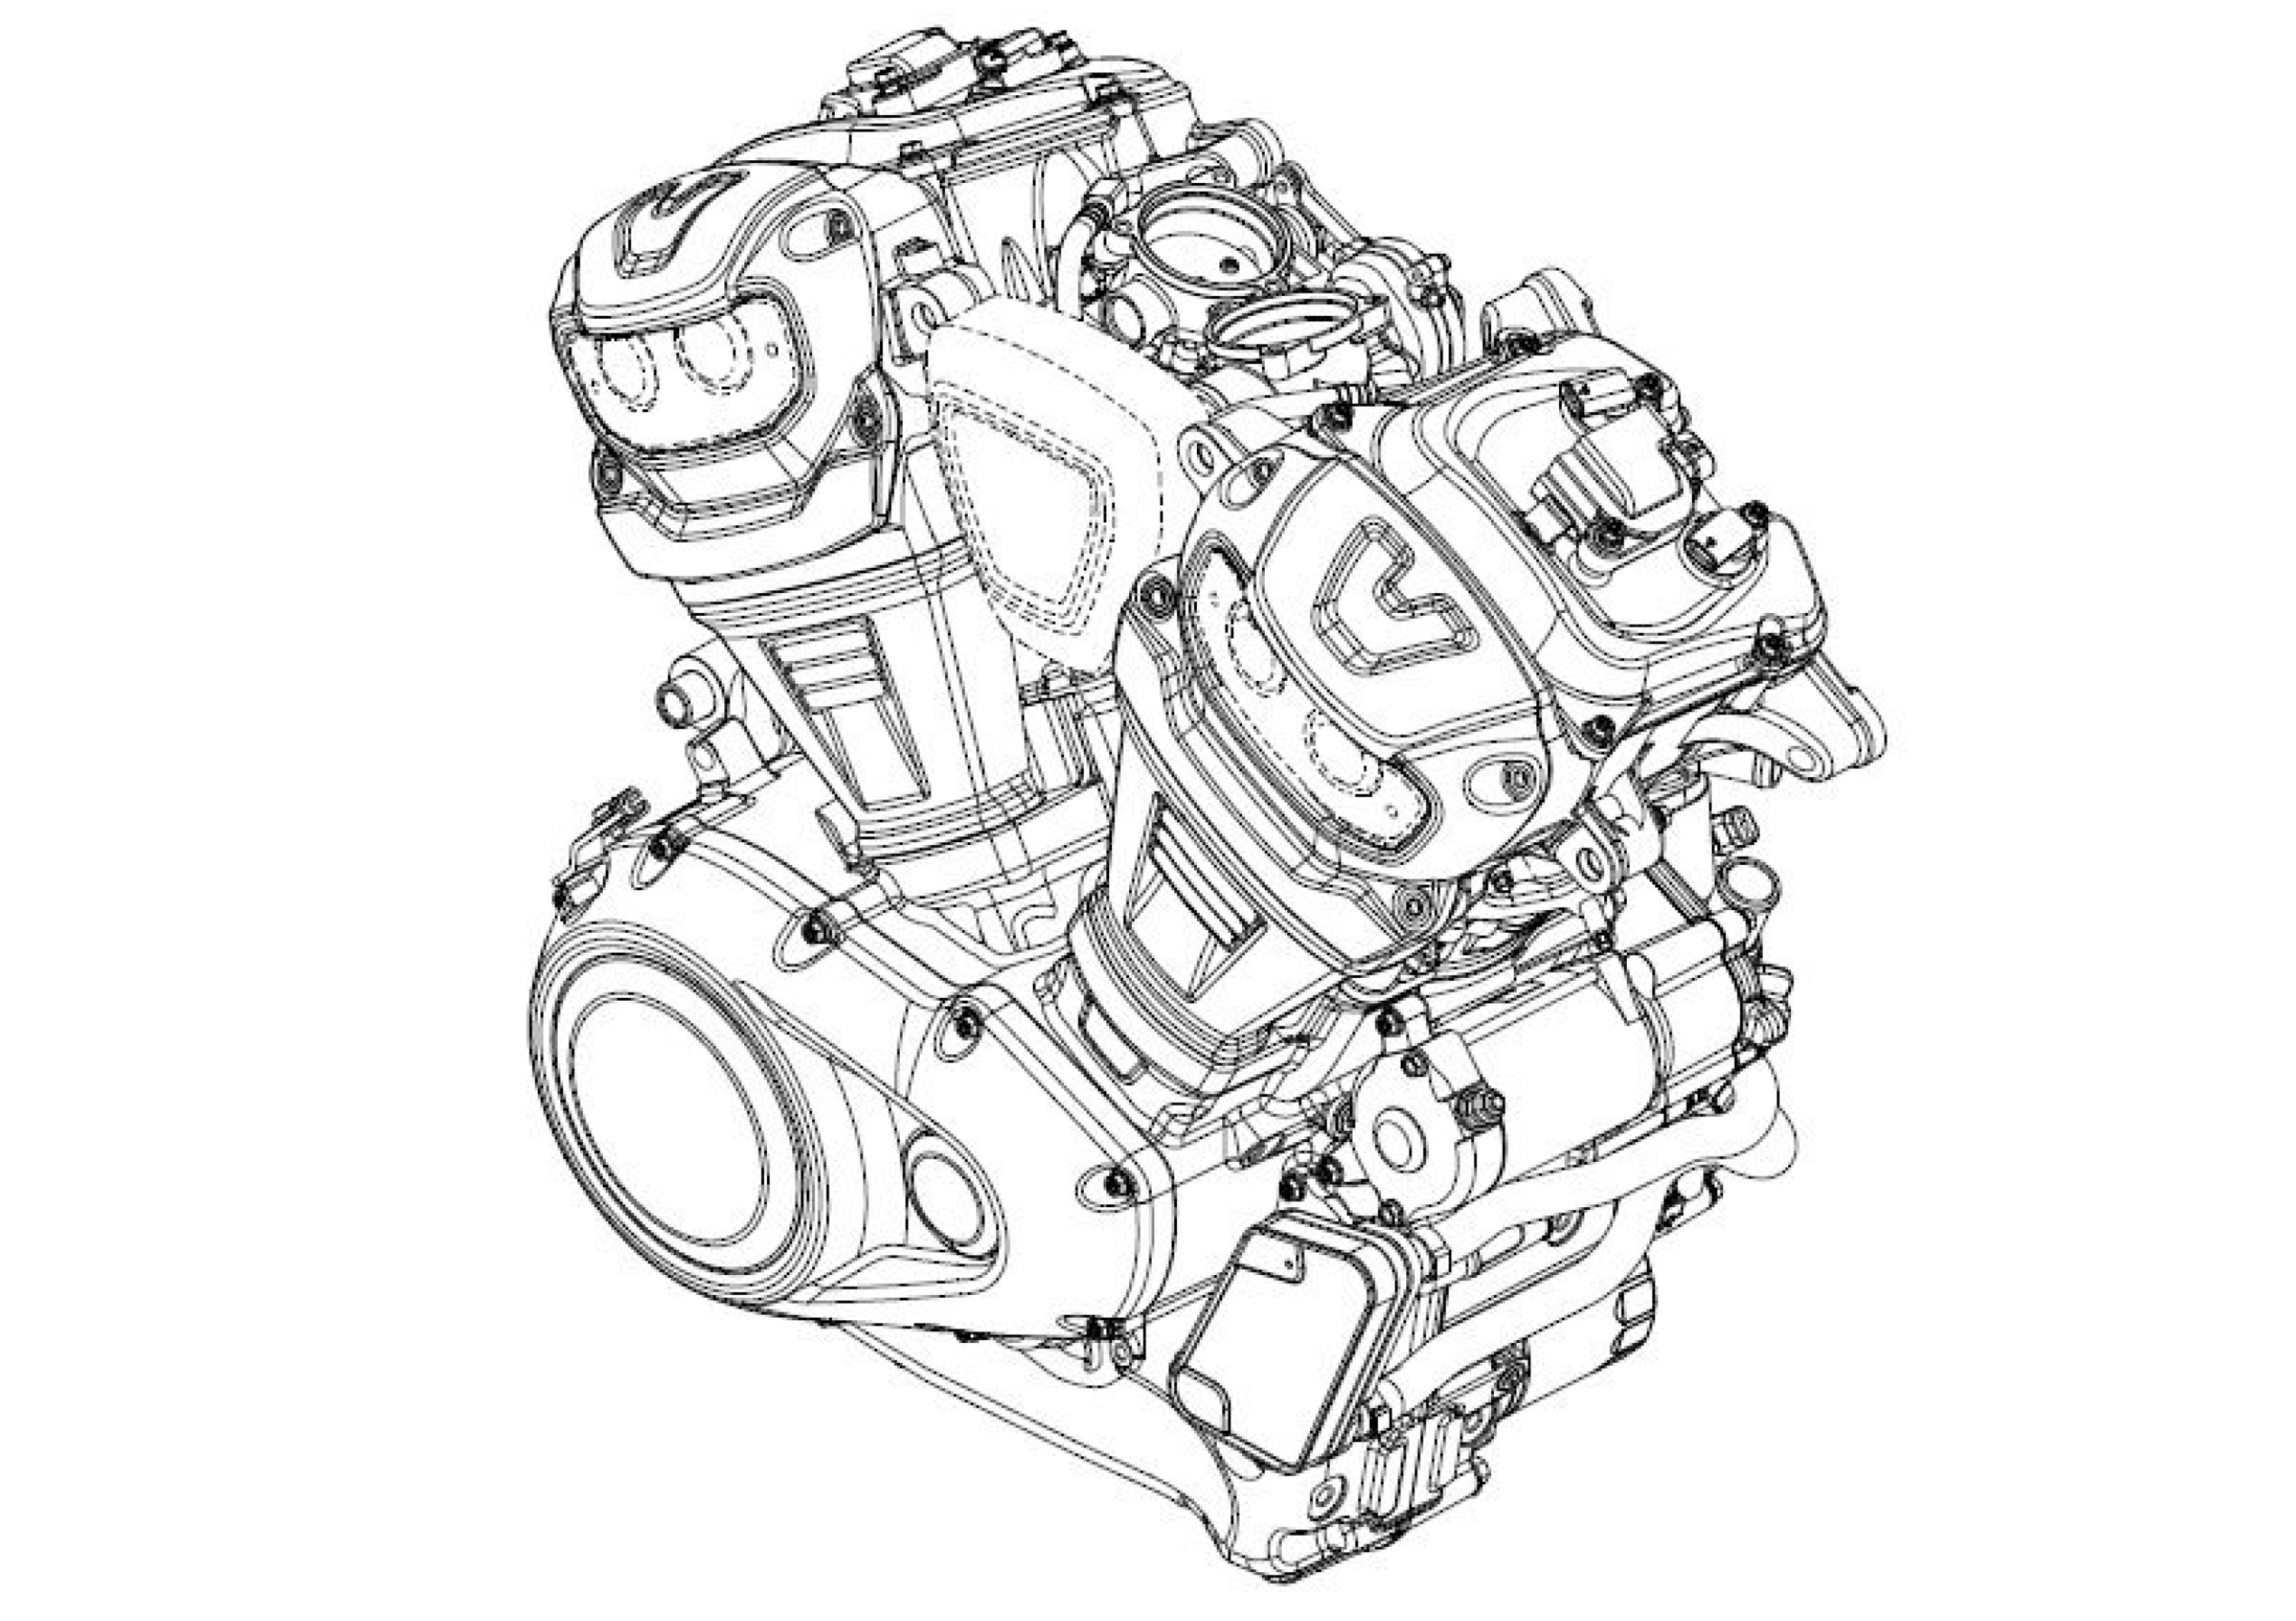 Harley-Davidson: il nuovo motore a V di 60&deg; raffreddato a liquido